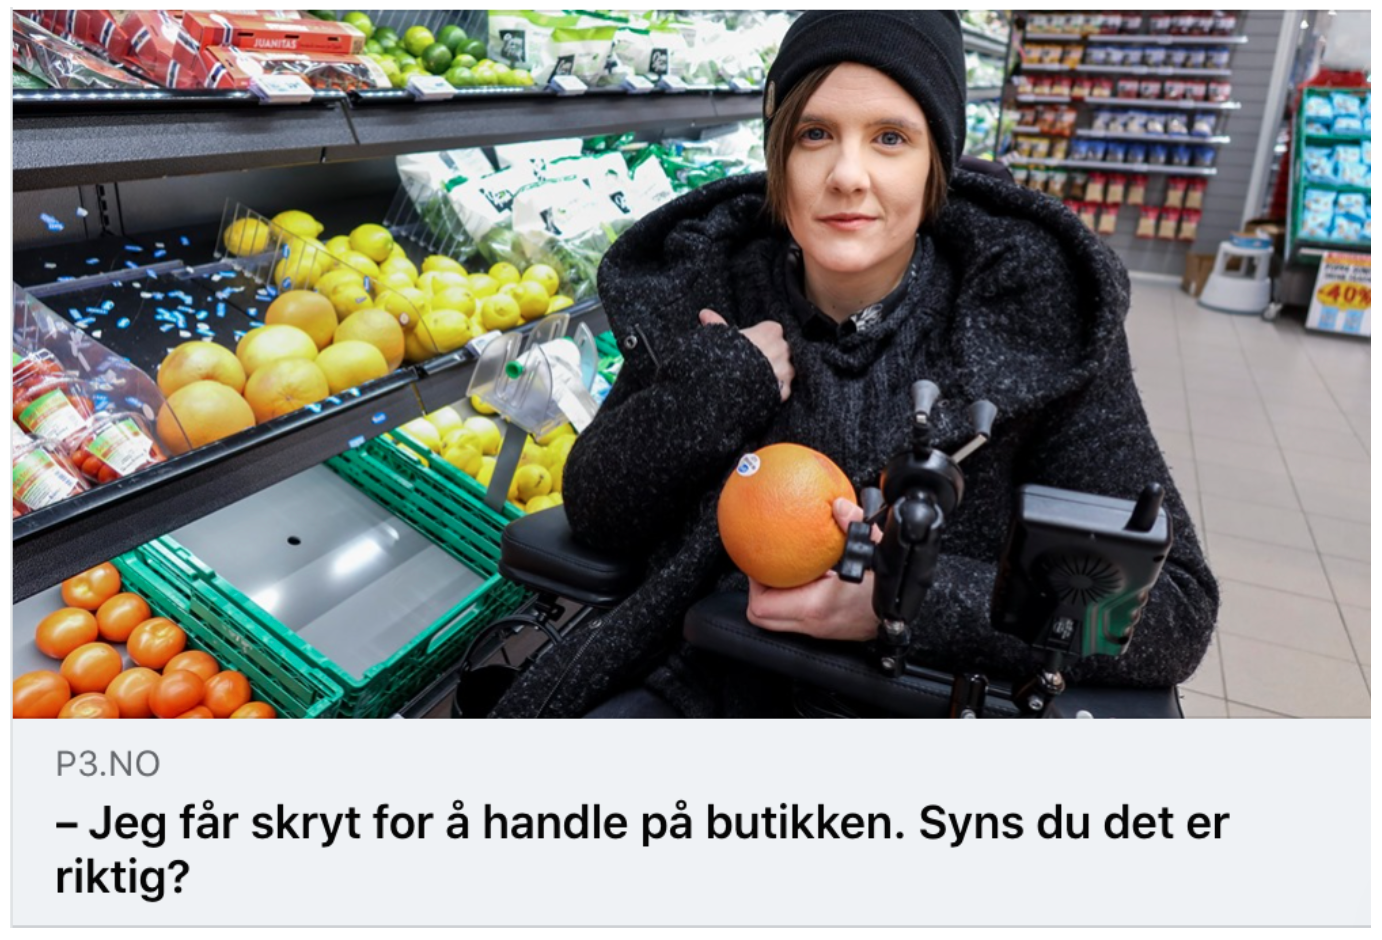 Faksimile fra P3.no. Bilde av Ingrid Thunem i matbutikken med en grapefrukt i hånda. Sitat under bildet: Jeg får skryt for å handle på butikken. Synes du det er riktig?